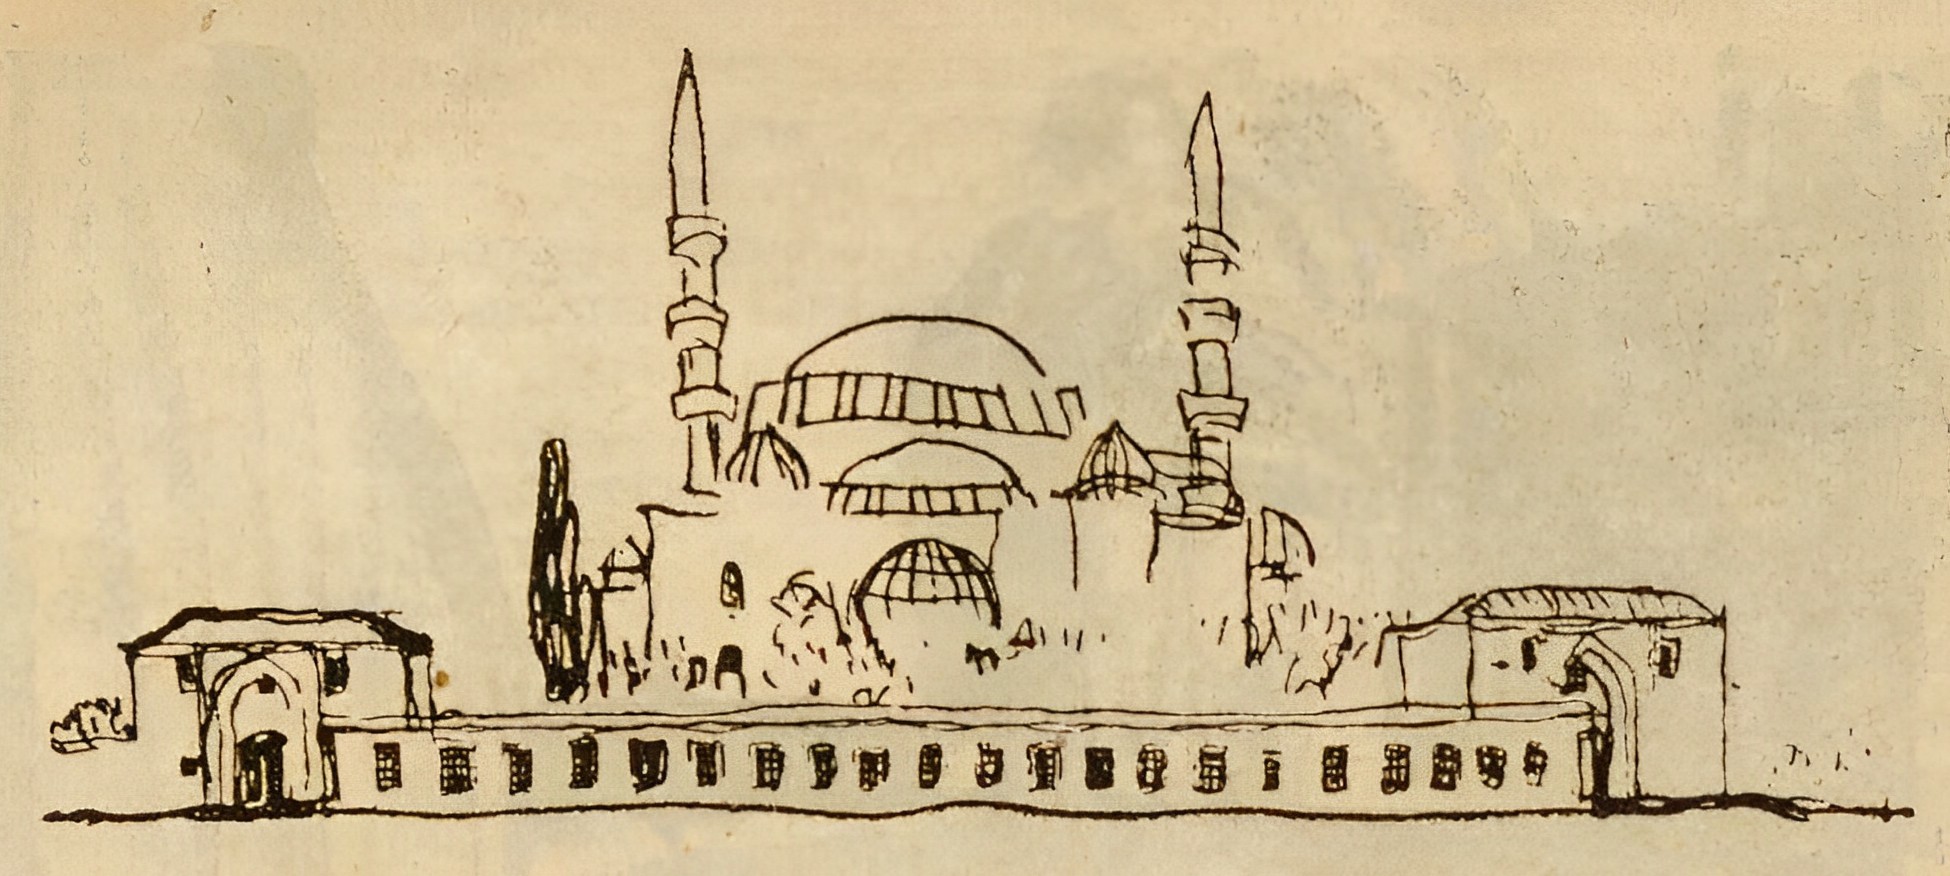 Стамбул: муэдзины, Наргилле, нежные кладбища. Прошлое, настоящее, по ту сторону неподвижность. Элегия в форме призм.